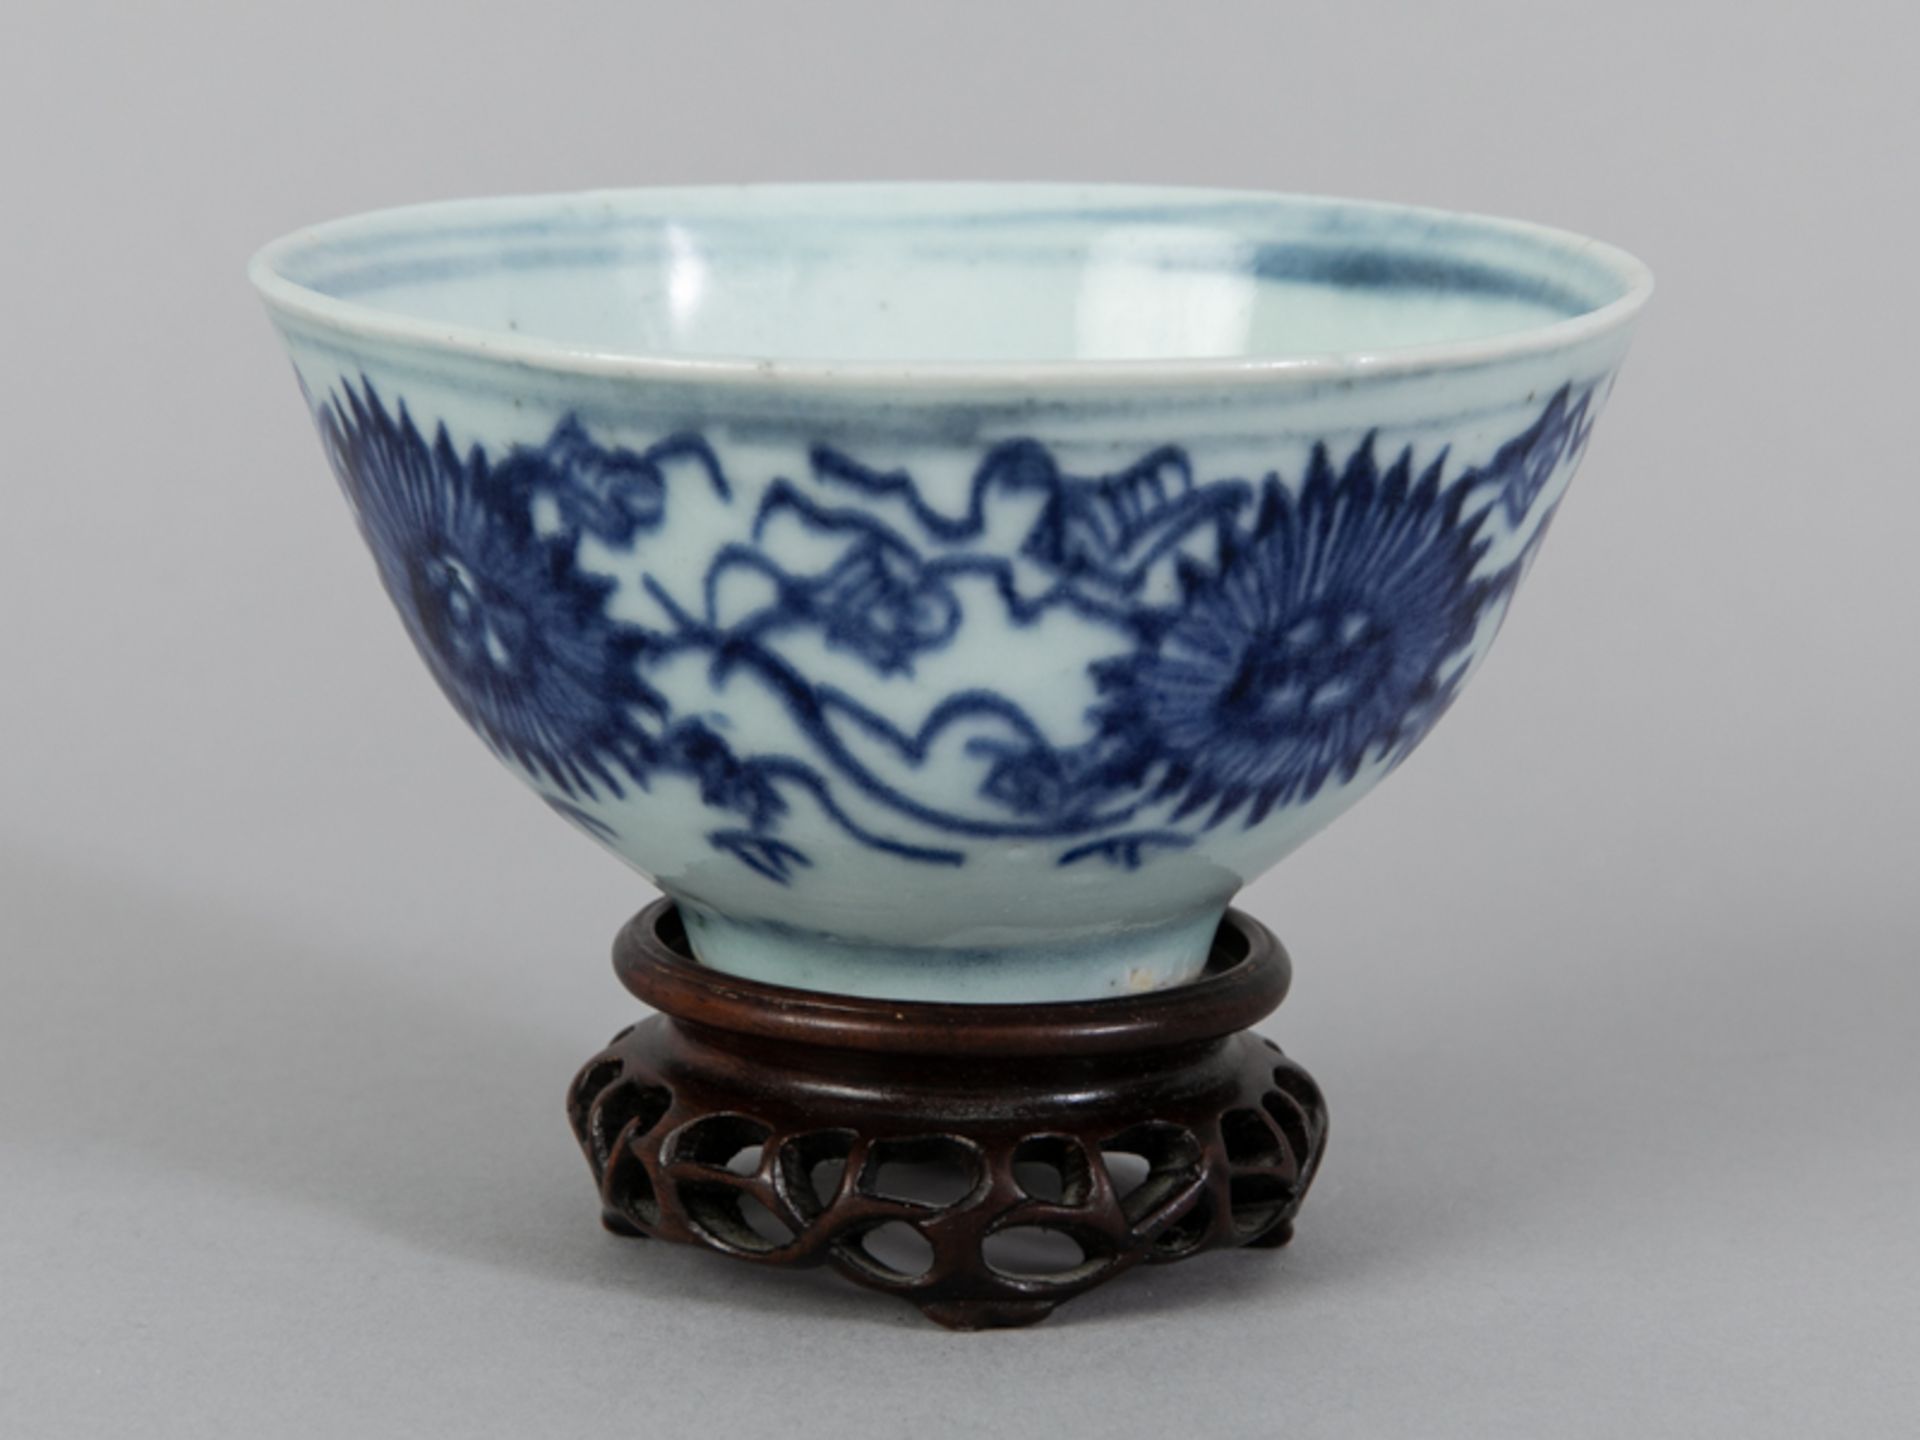 Kleine Schale / Kumme / Teeschale, China, wohl Qing-Dynastie, 18. Jh.